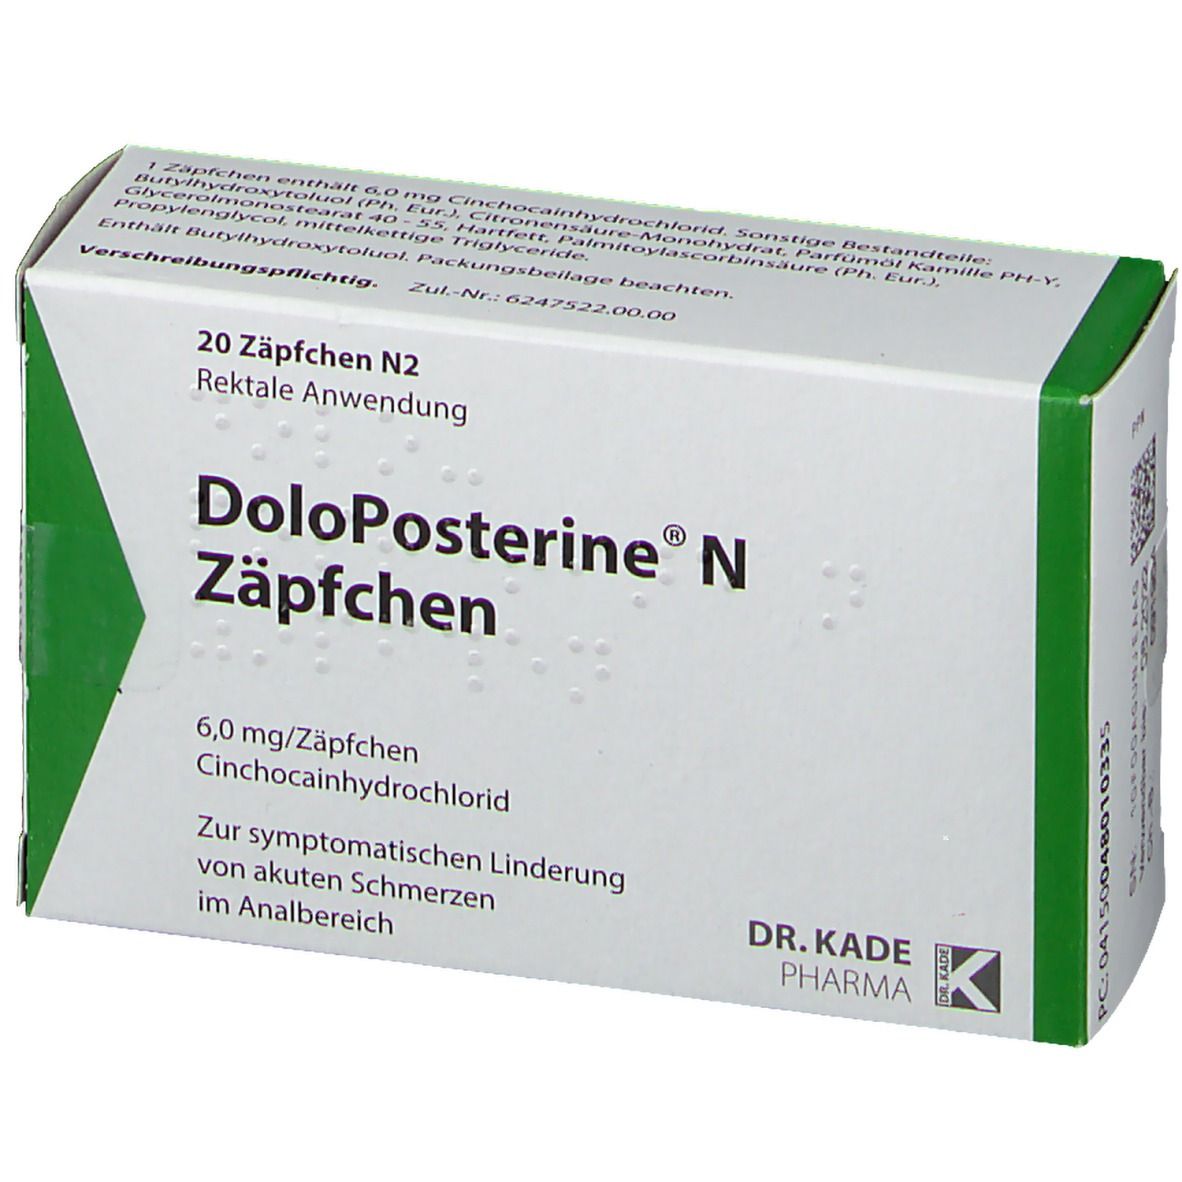 DoloPosterine® N Zäpfchen